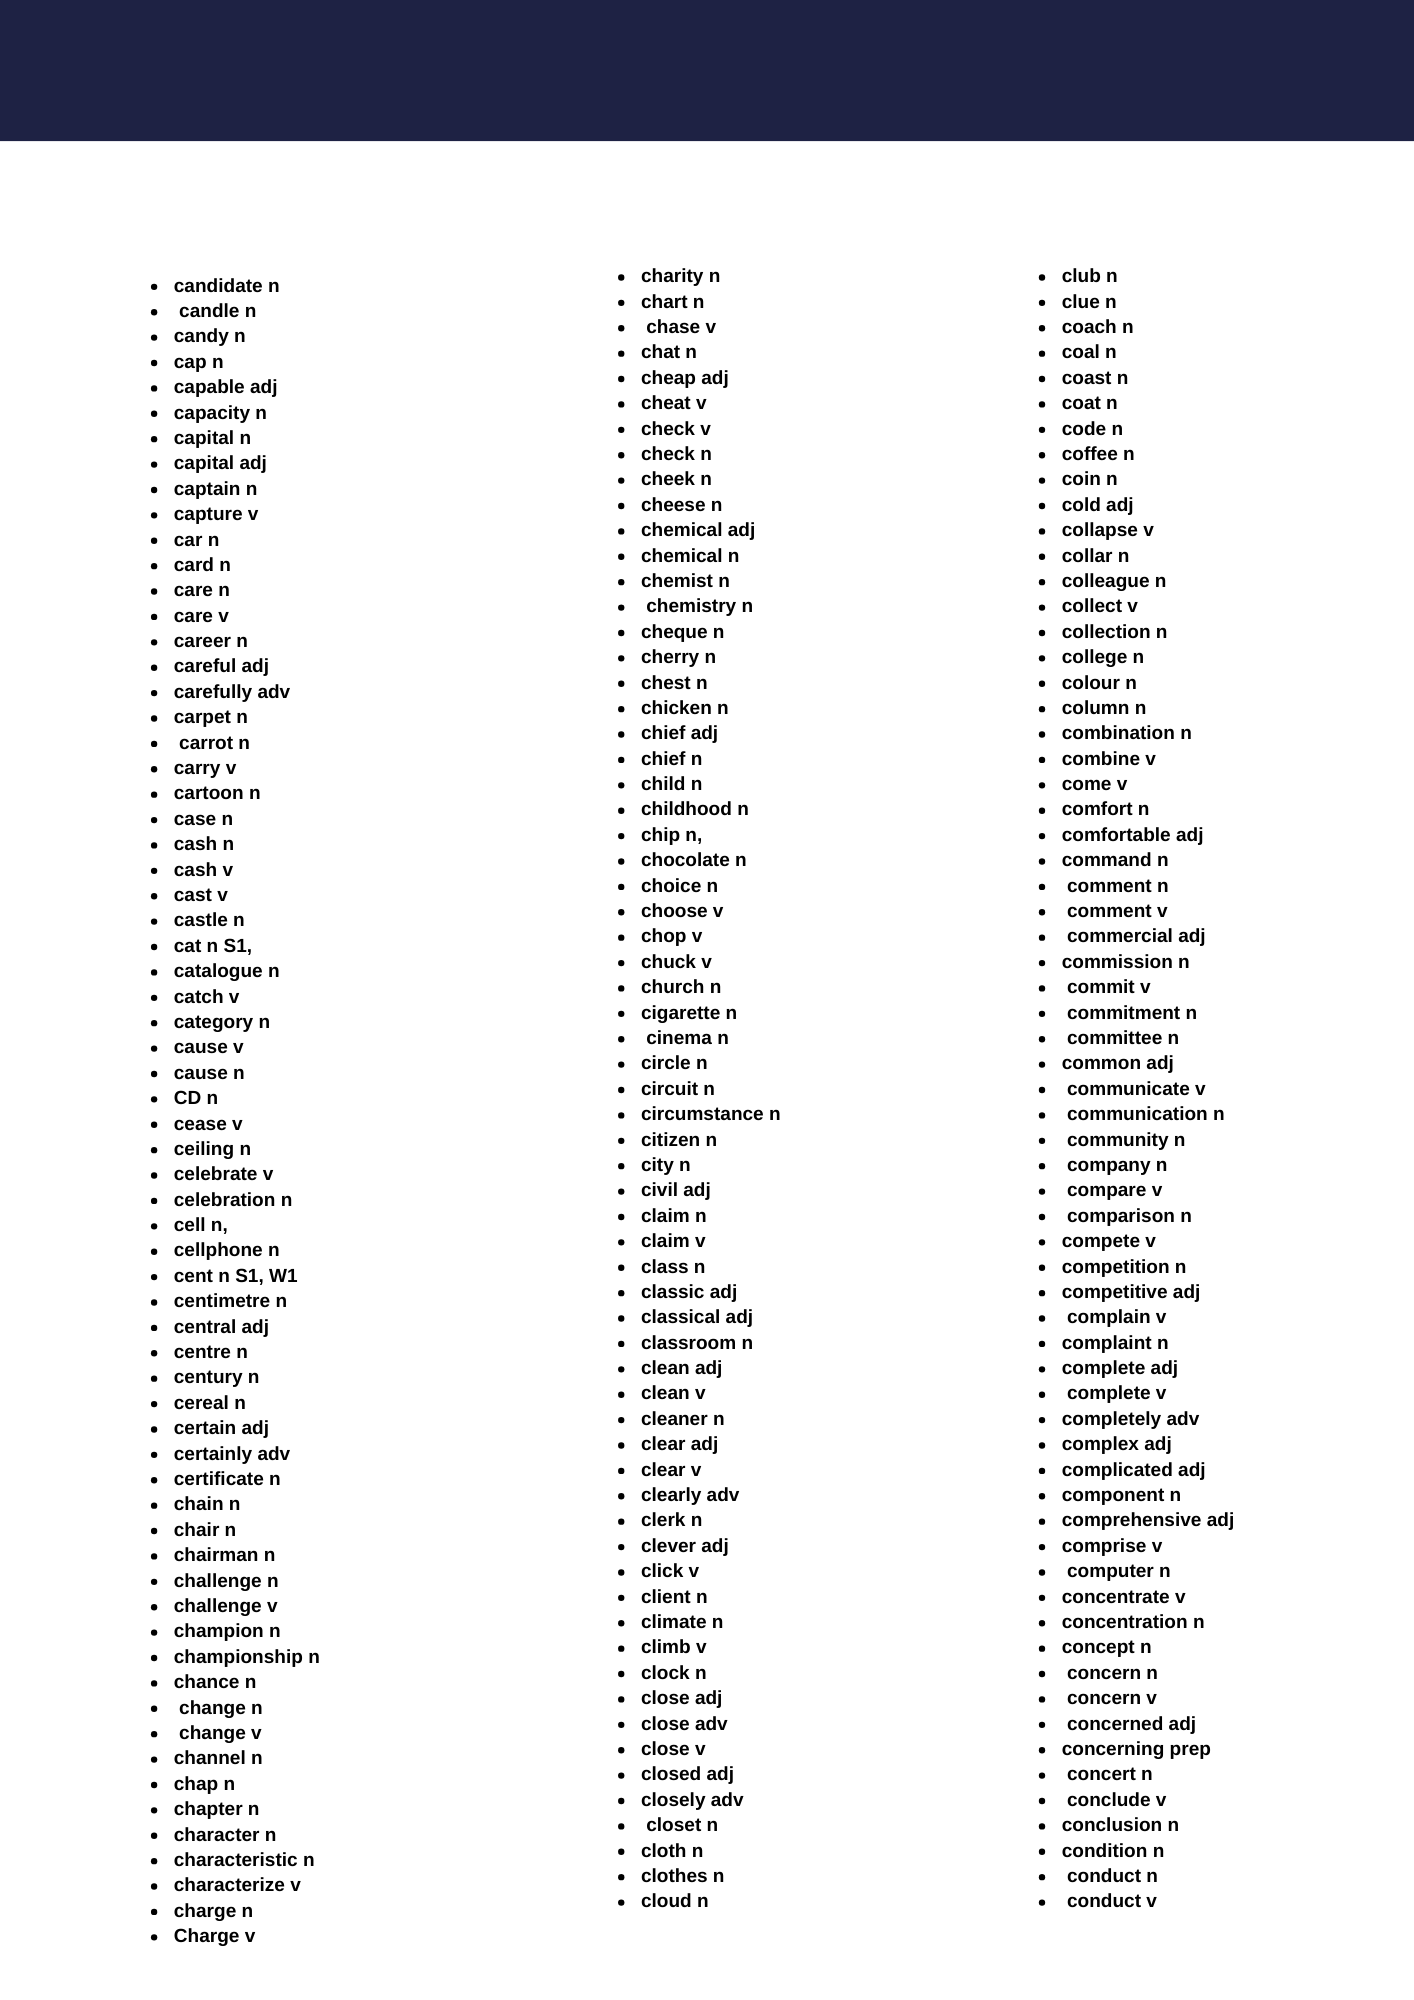 قائمة السلحفاة (٣٠٠٠ كلمة الأكثر تكراراً ) باللغة الإنجليزية